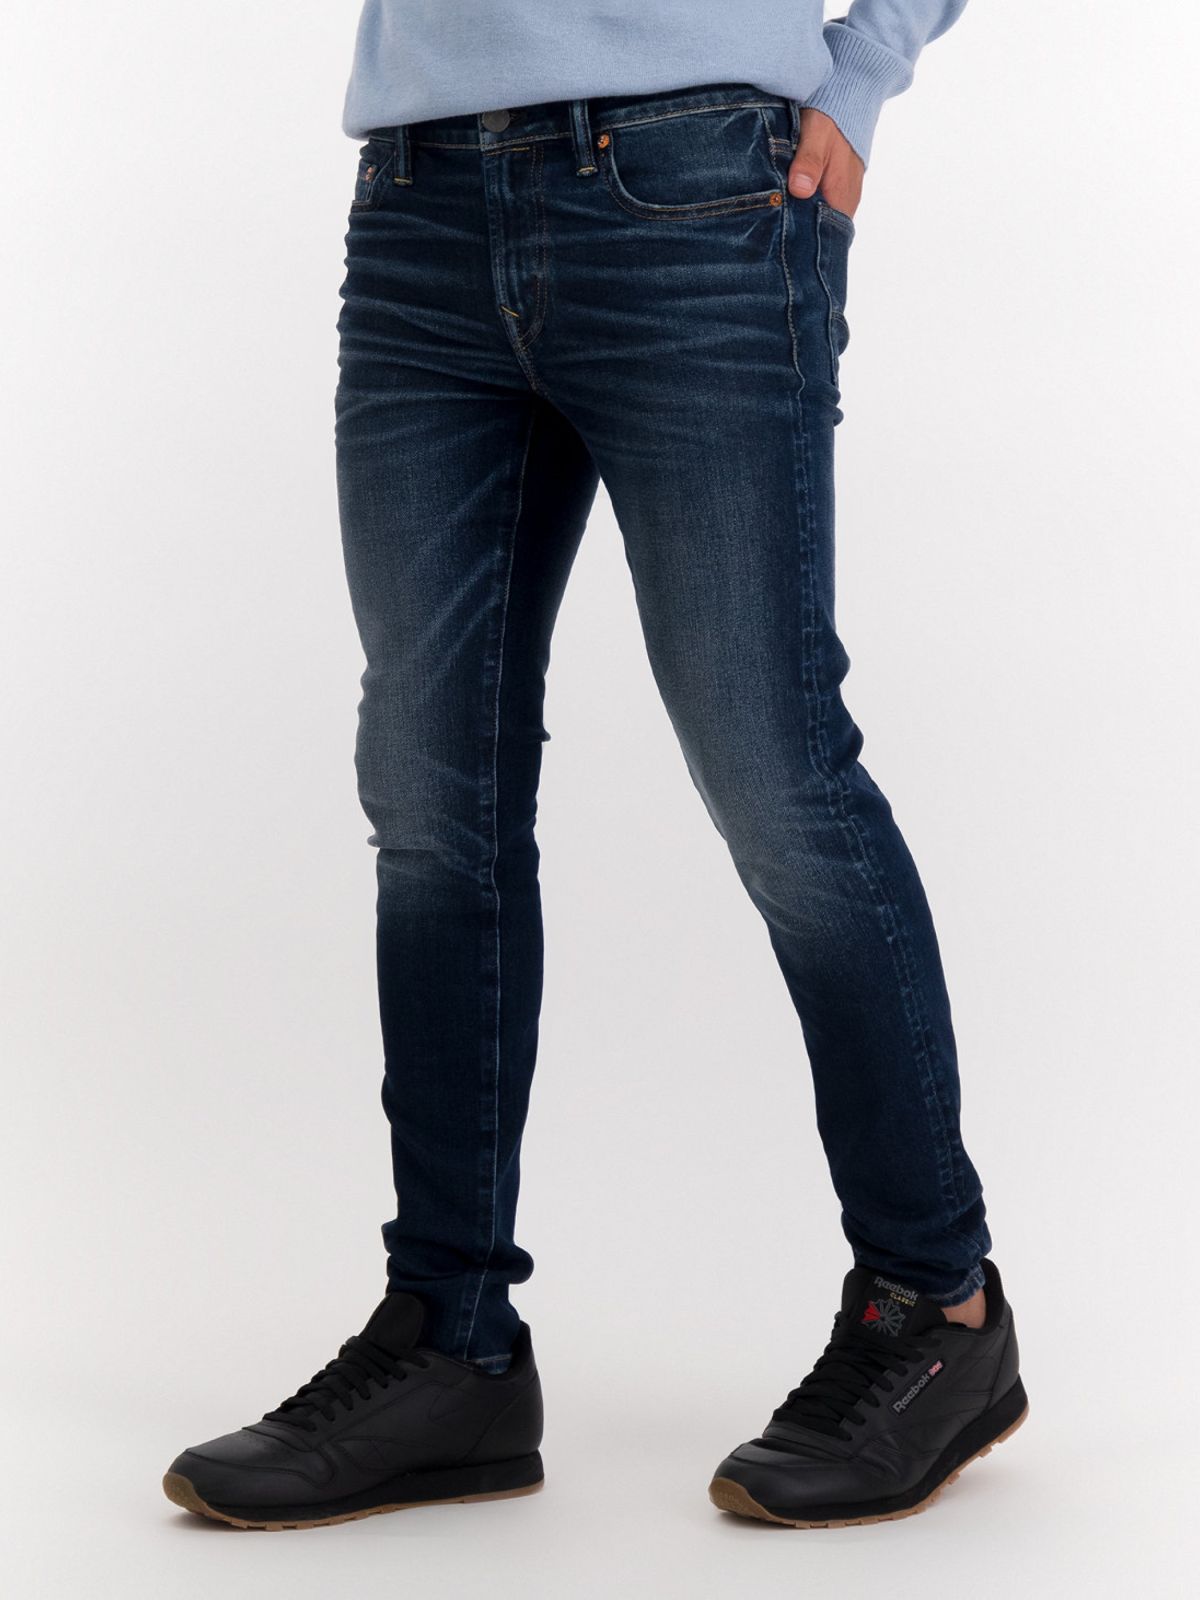  ג'ינס ווש בגזרת SKINNY של AMERICAN EAGLE